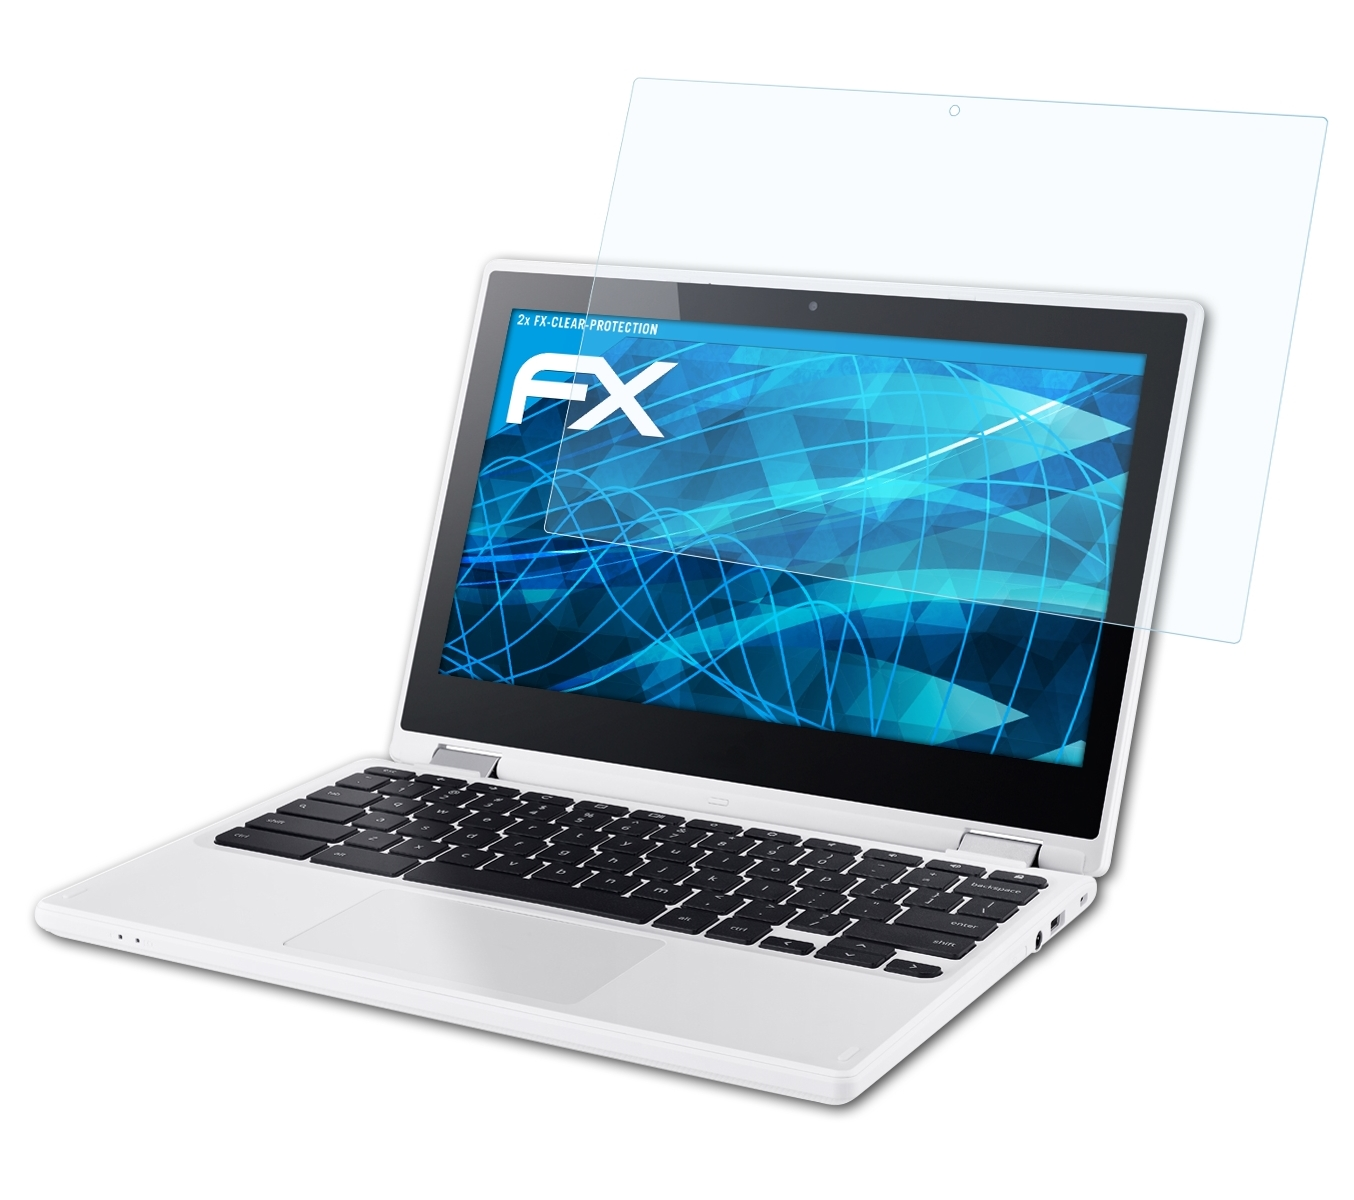 ATFOLIX 2x Displayschutz(für Chromebook (Acer)) FX-Clear Google R11